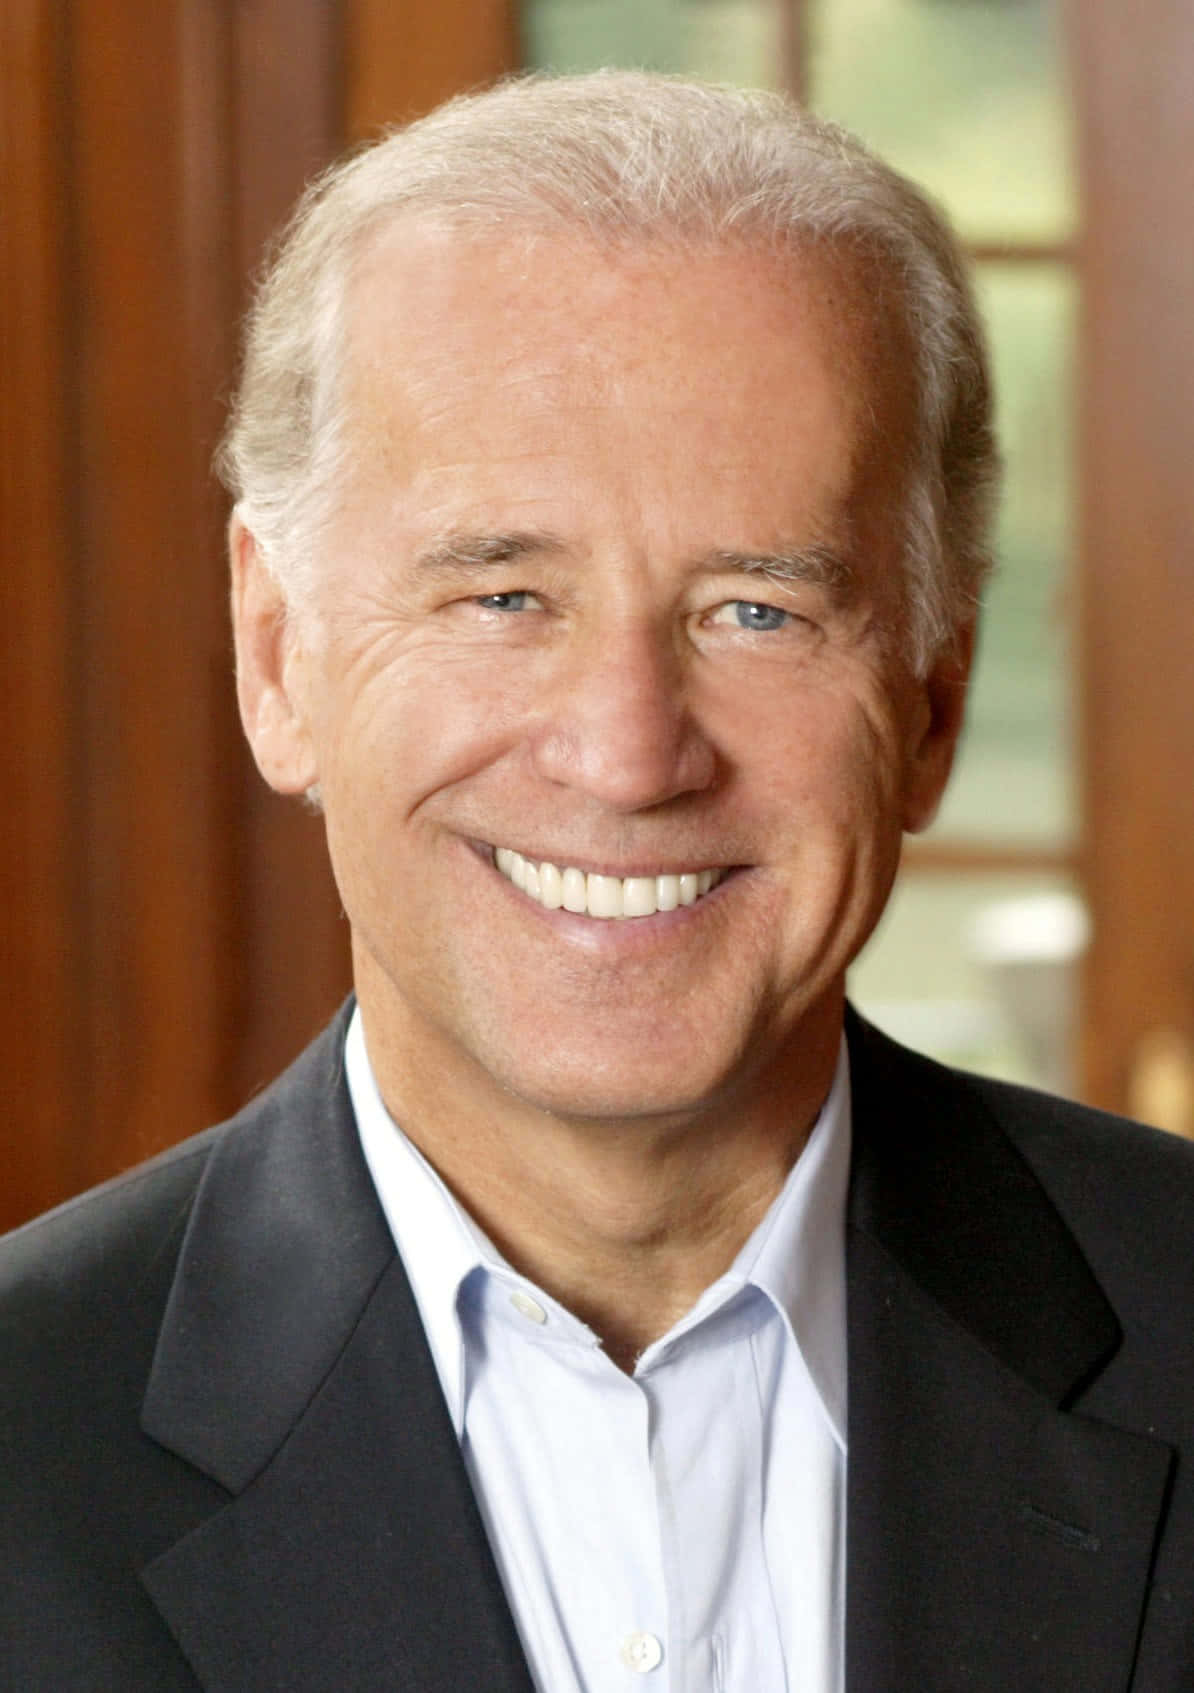 Joe Biden in a polite discussion